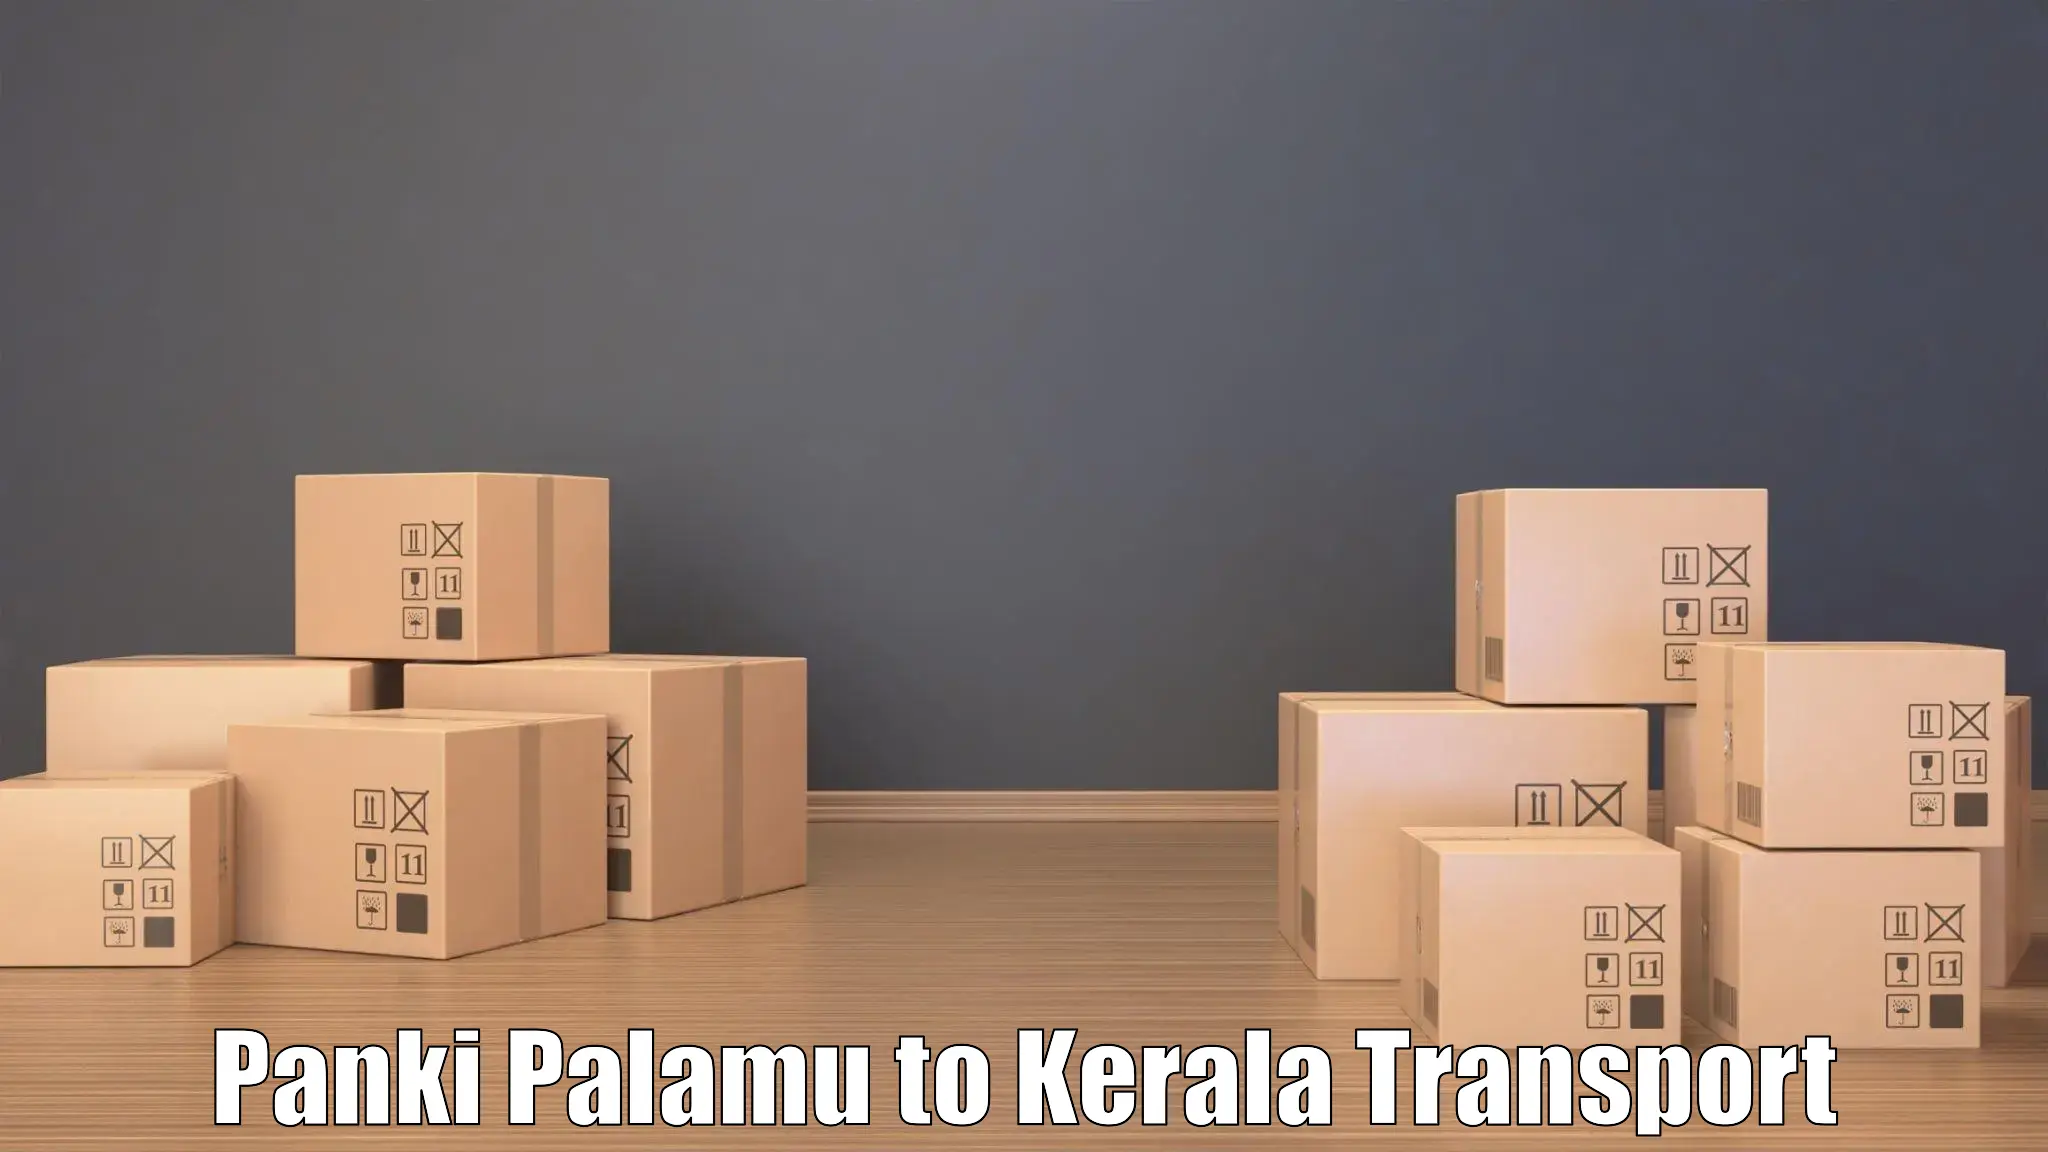 Domestic transport services Panki Palamu to Kerala